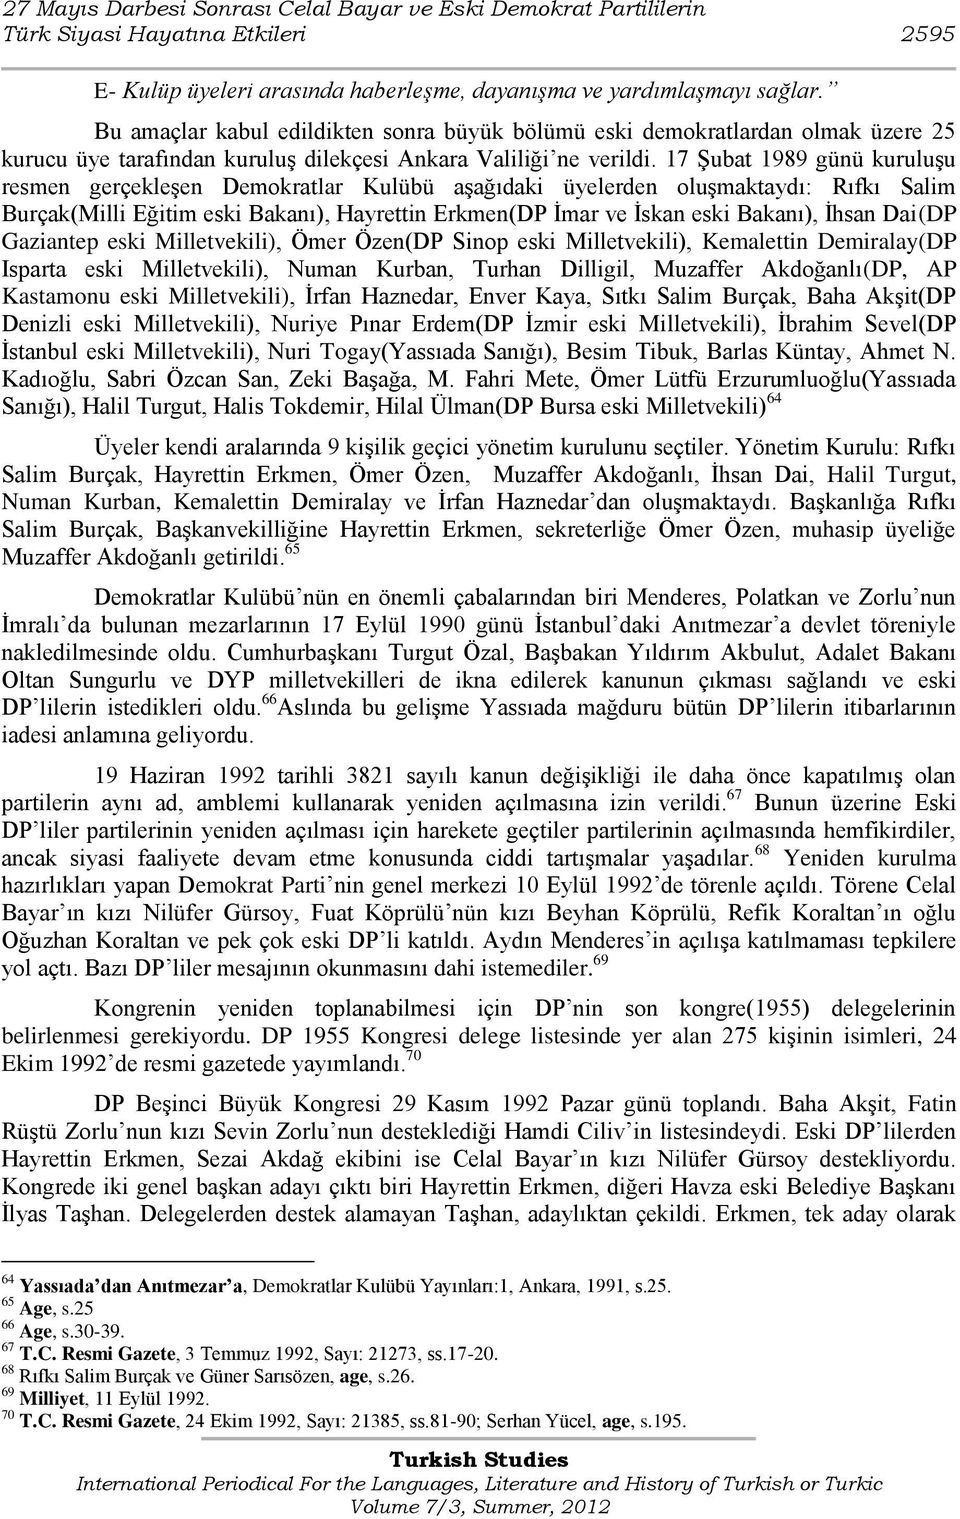 17 ġubat 1989 günü kuruluģu resmen gerçekleģen Demokratlar Kulübü aģağıdaki üyelerden oluģmaktaydı: Rıfkı Salim Burçak(Milli Eğitim eski Bakanı), Hayrettin Erkmen(DP Ġmar ve Ġskan eski Bakanı), Ġhsan